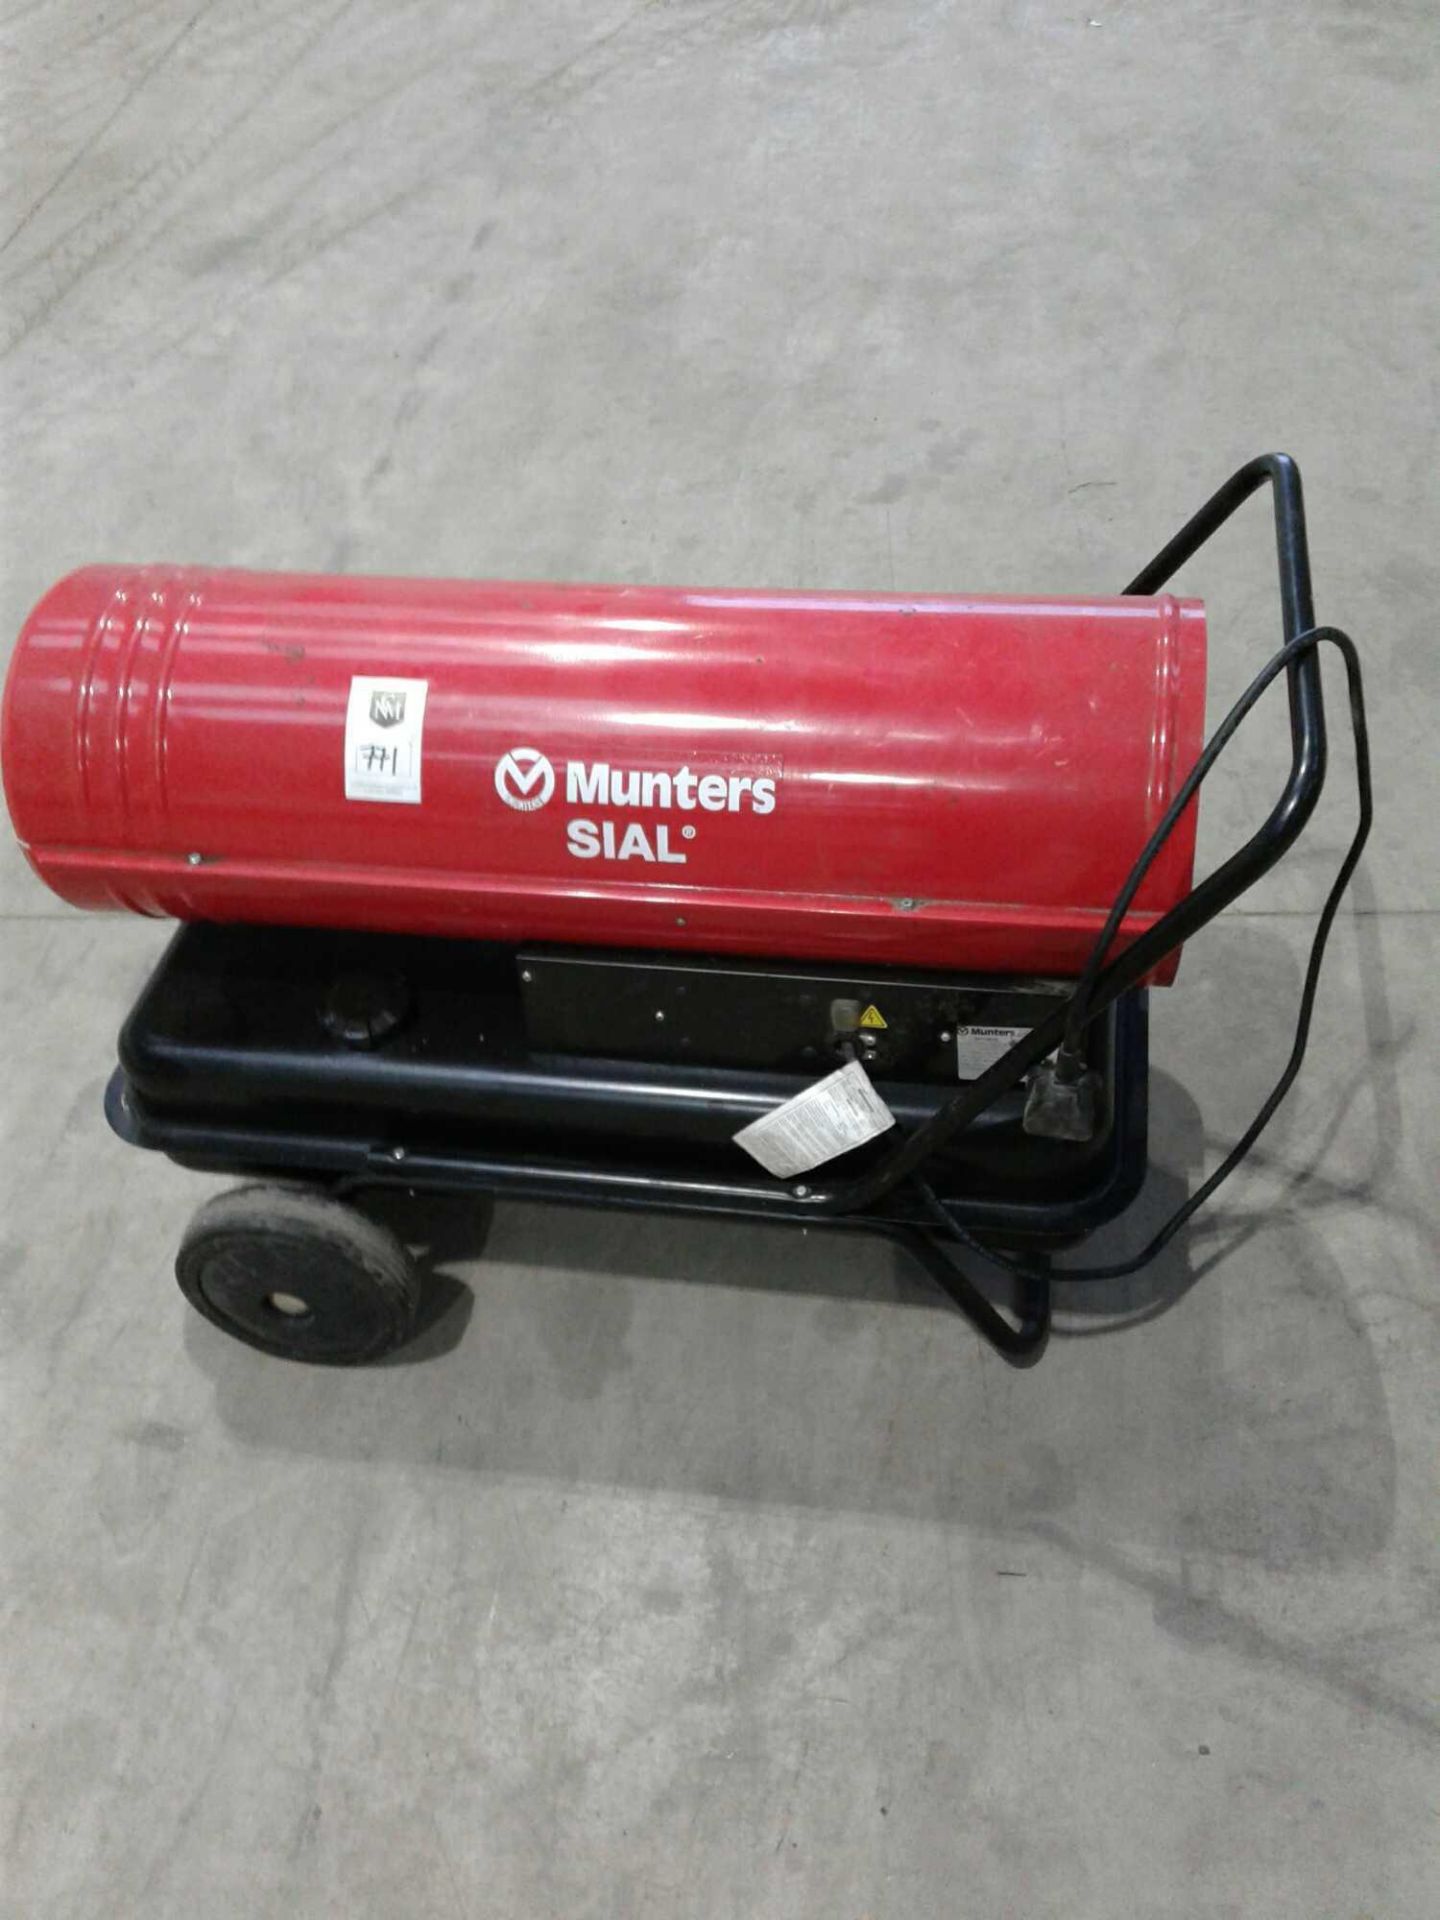 Munters diesel space heater